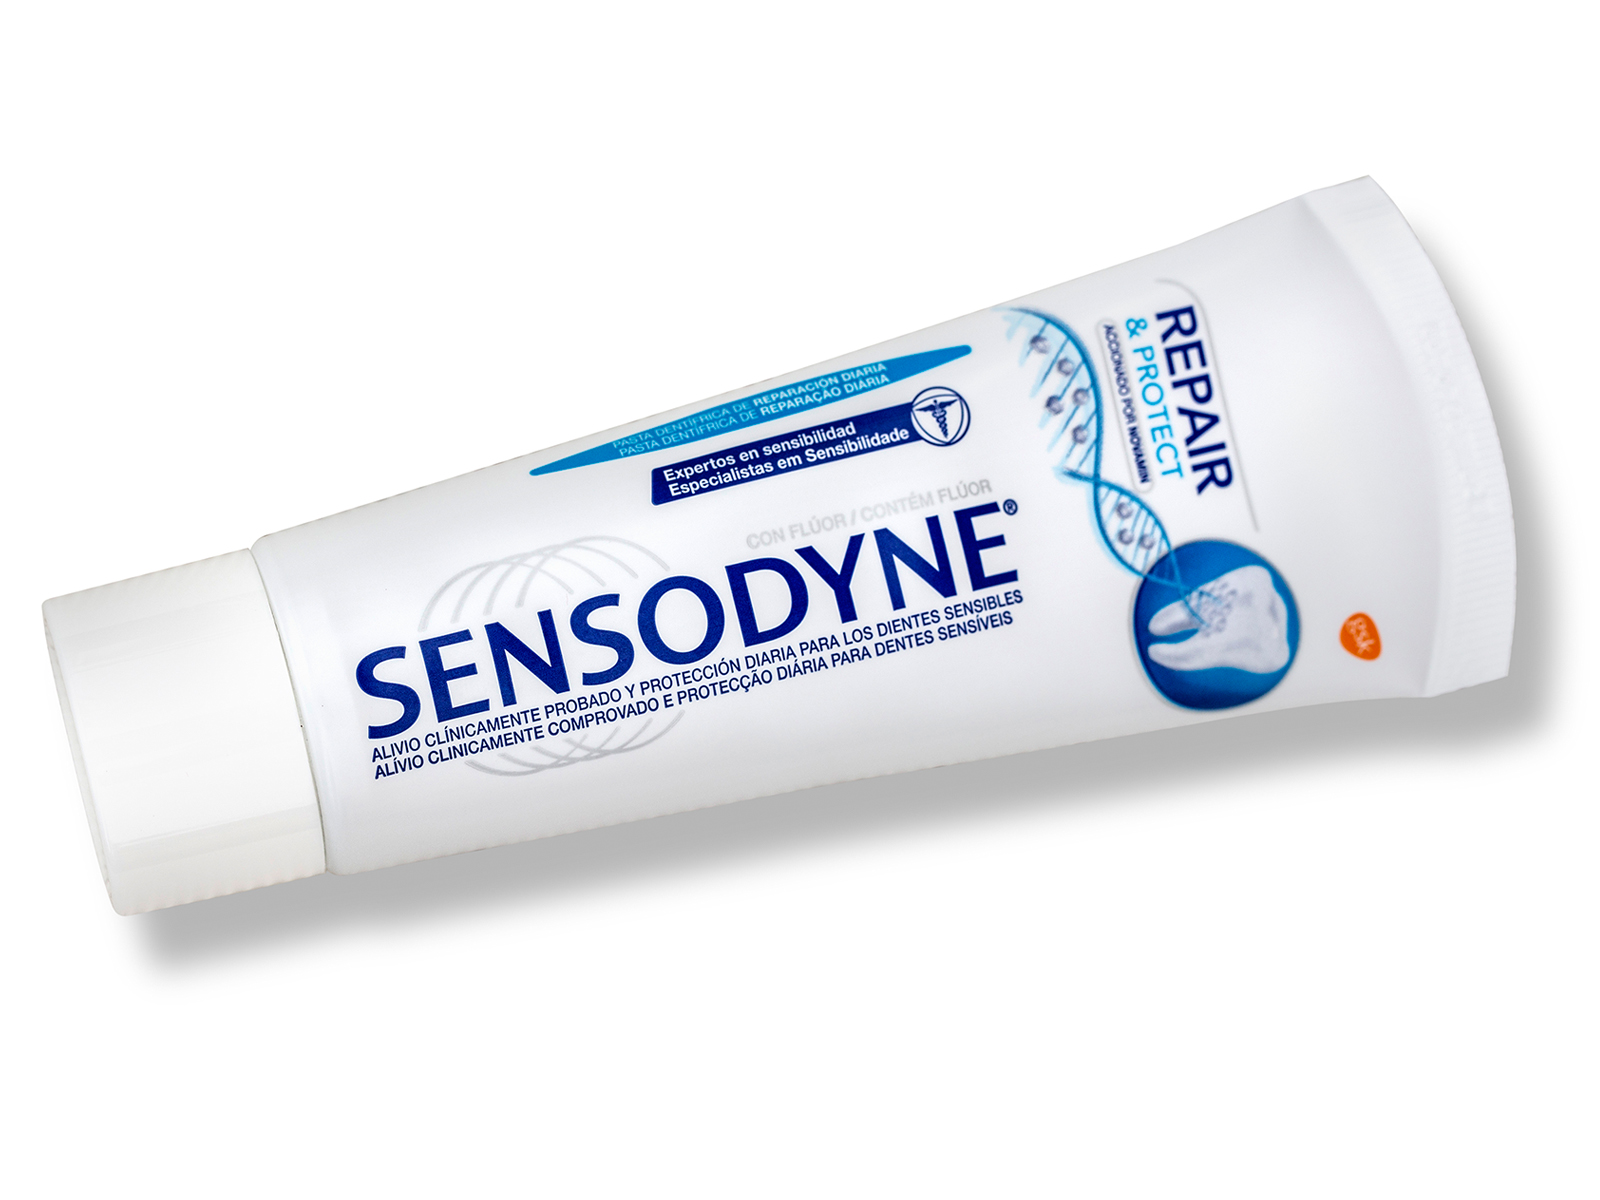 Can I rub Sensodyne on my teeth?